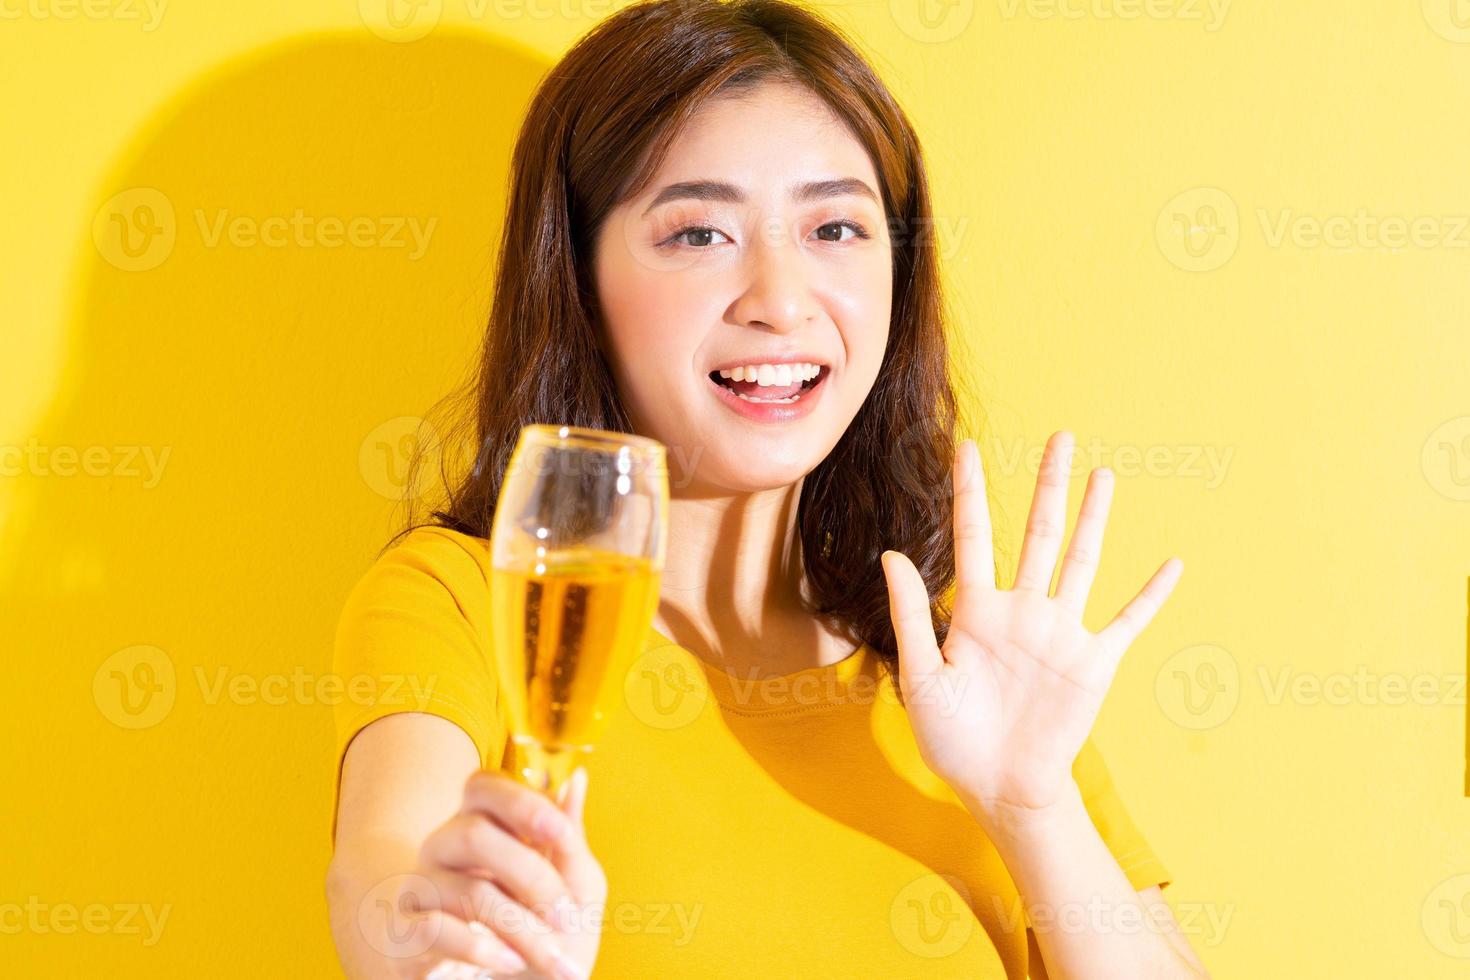 jeune femme asiatique buvant du vin et posant sur fond jaune photo